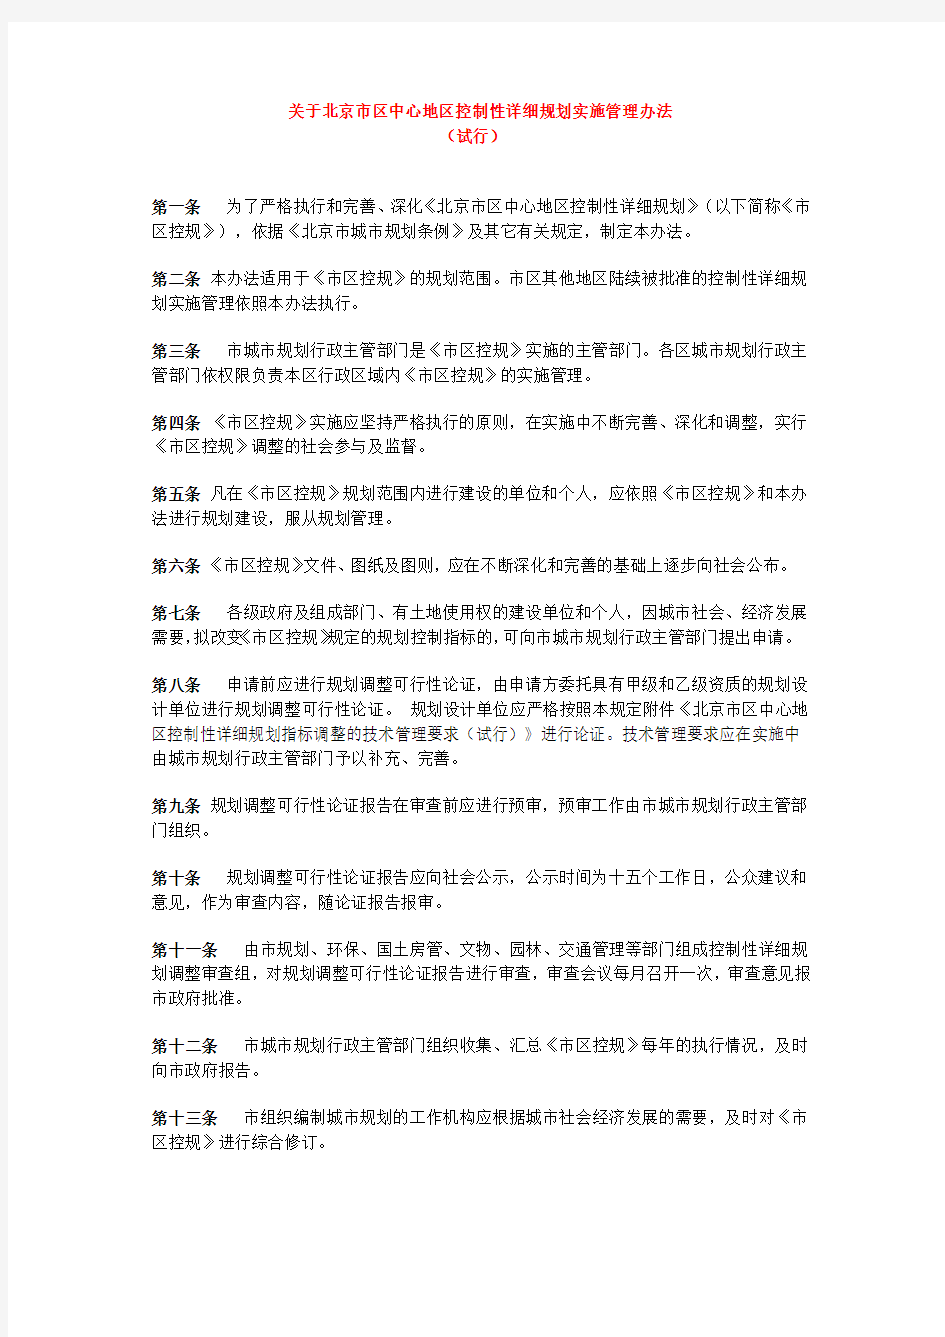 关于北京市区中心地区控制性详细规划实施管理办法